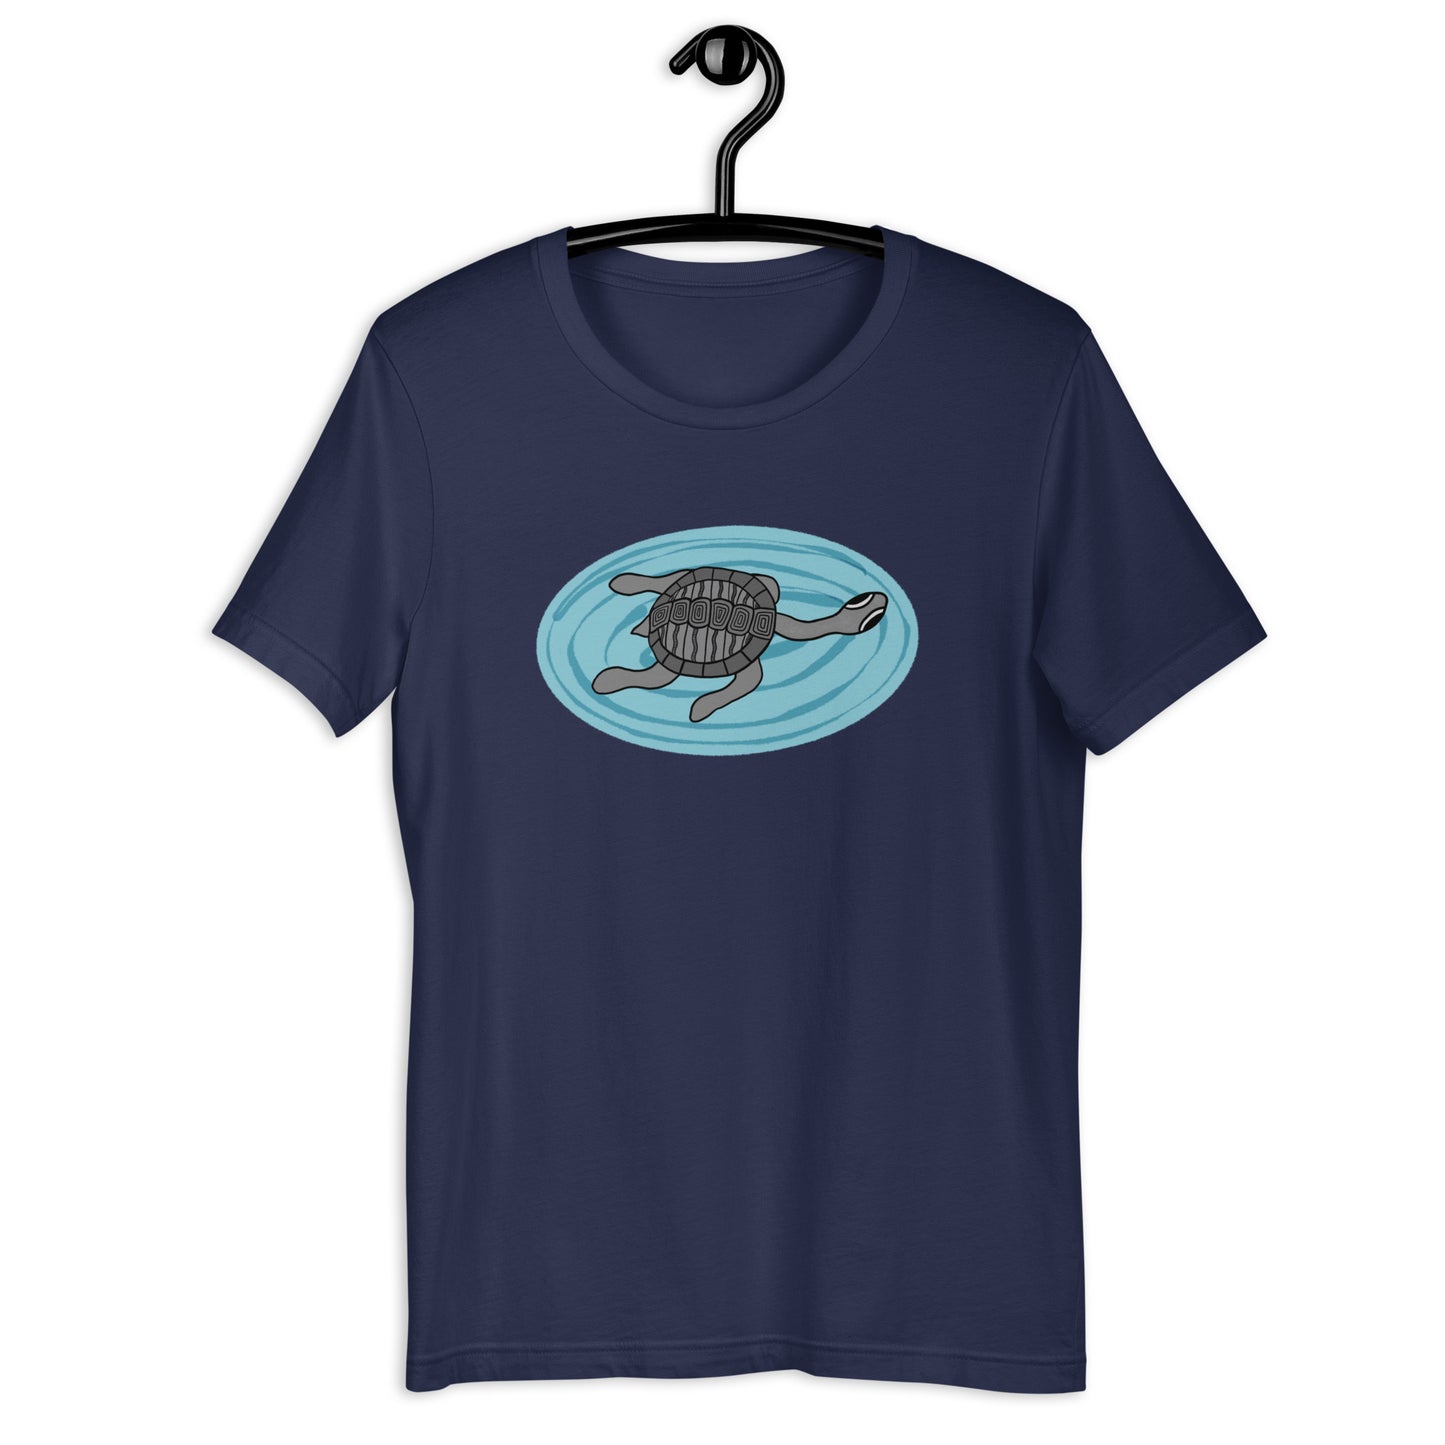 Long Neck Turtle Plus Size T-Shirt (Unisex)